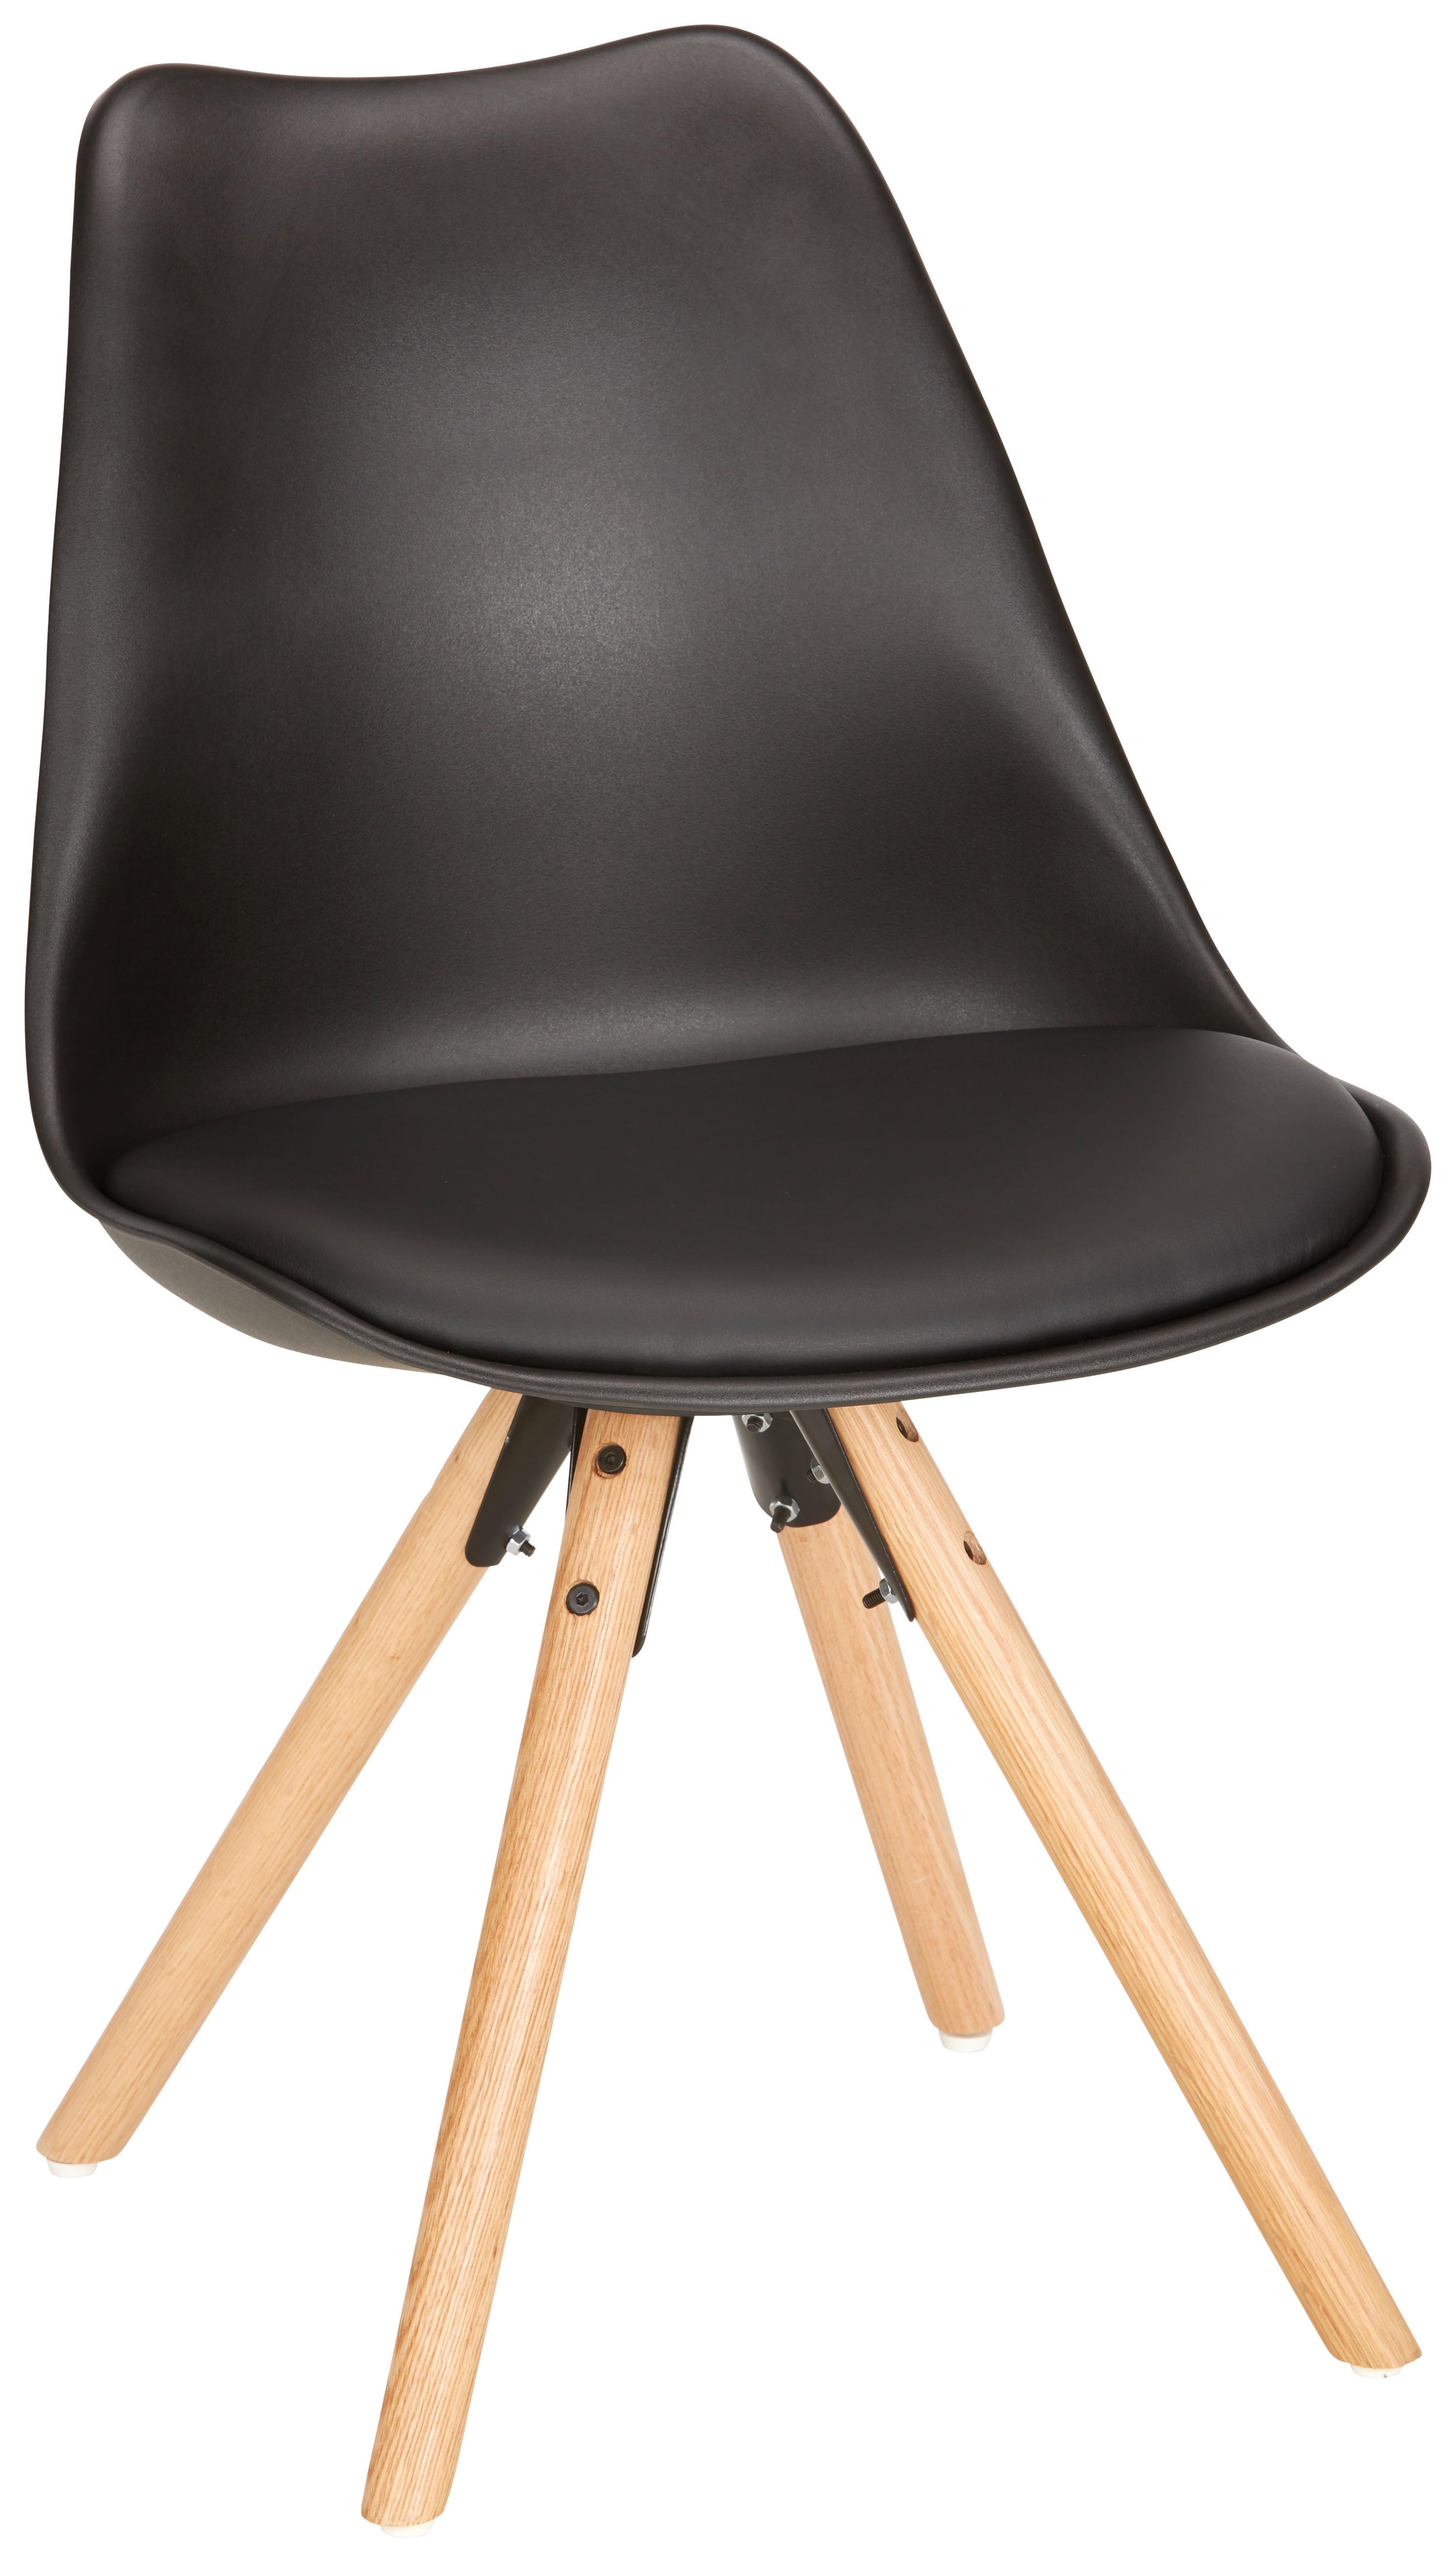 Stuhl in Schwarz - Eichefarben/Schwarz, Modern, Holz/Kunststoff (48/81/57cm) - Modern Living